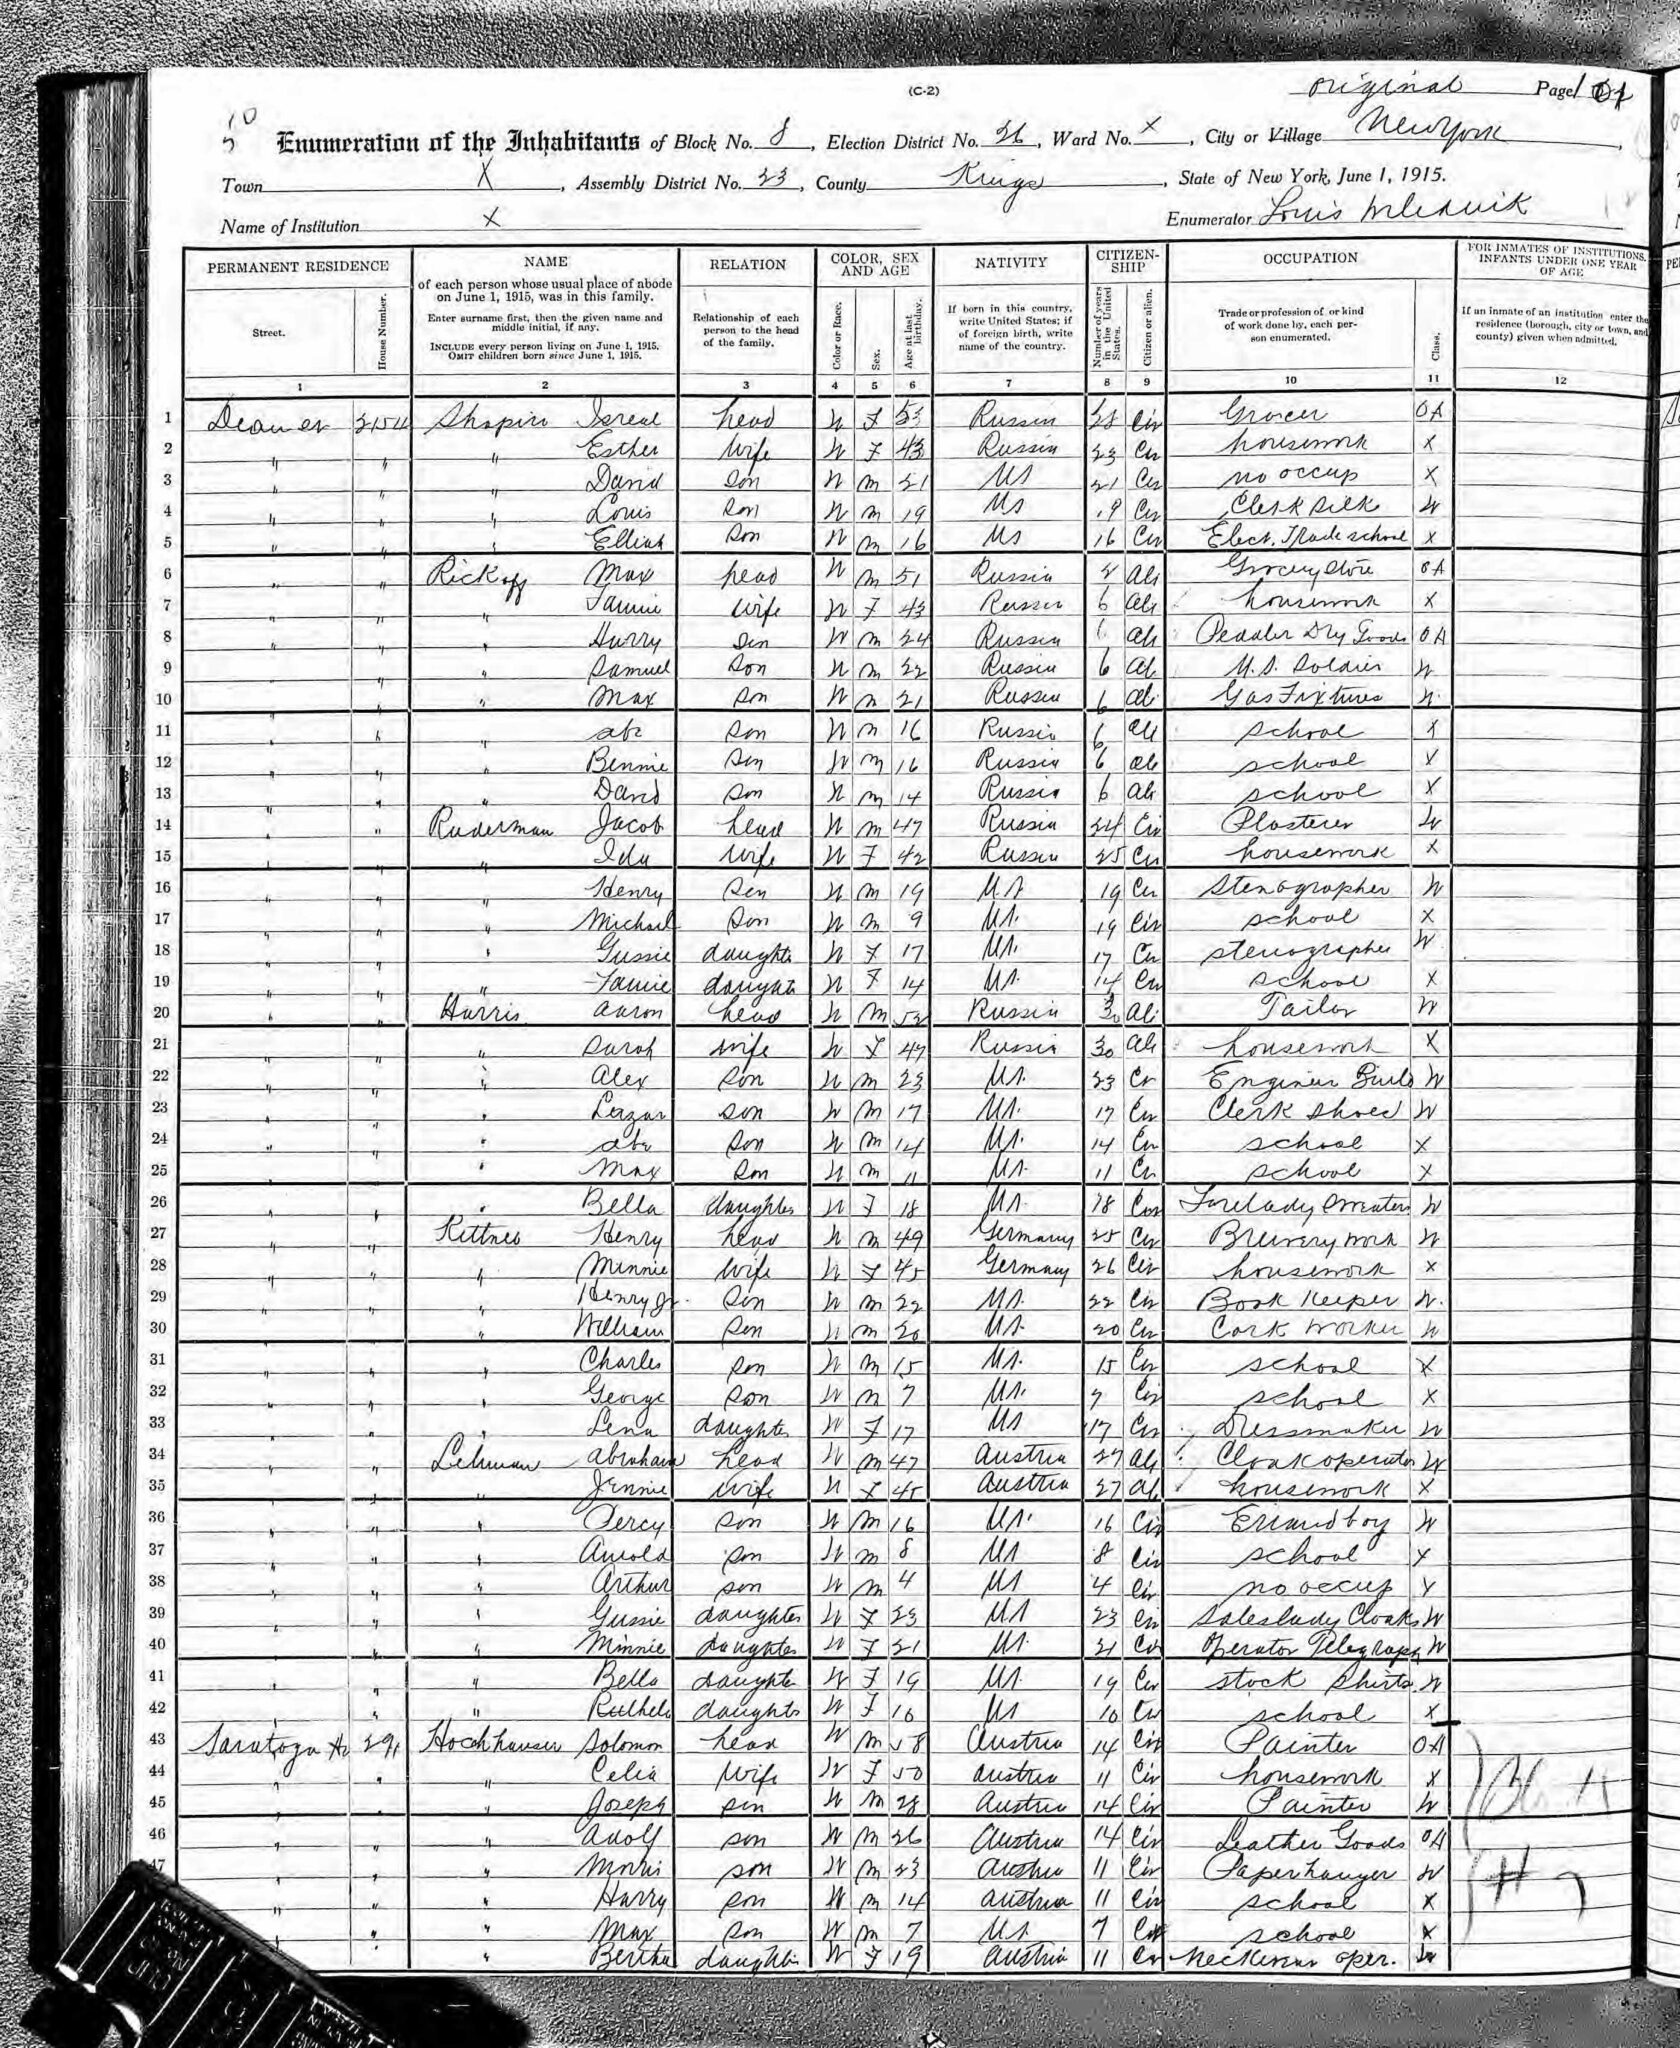 New York’s 1915 state census